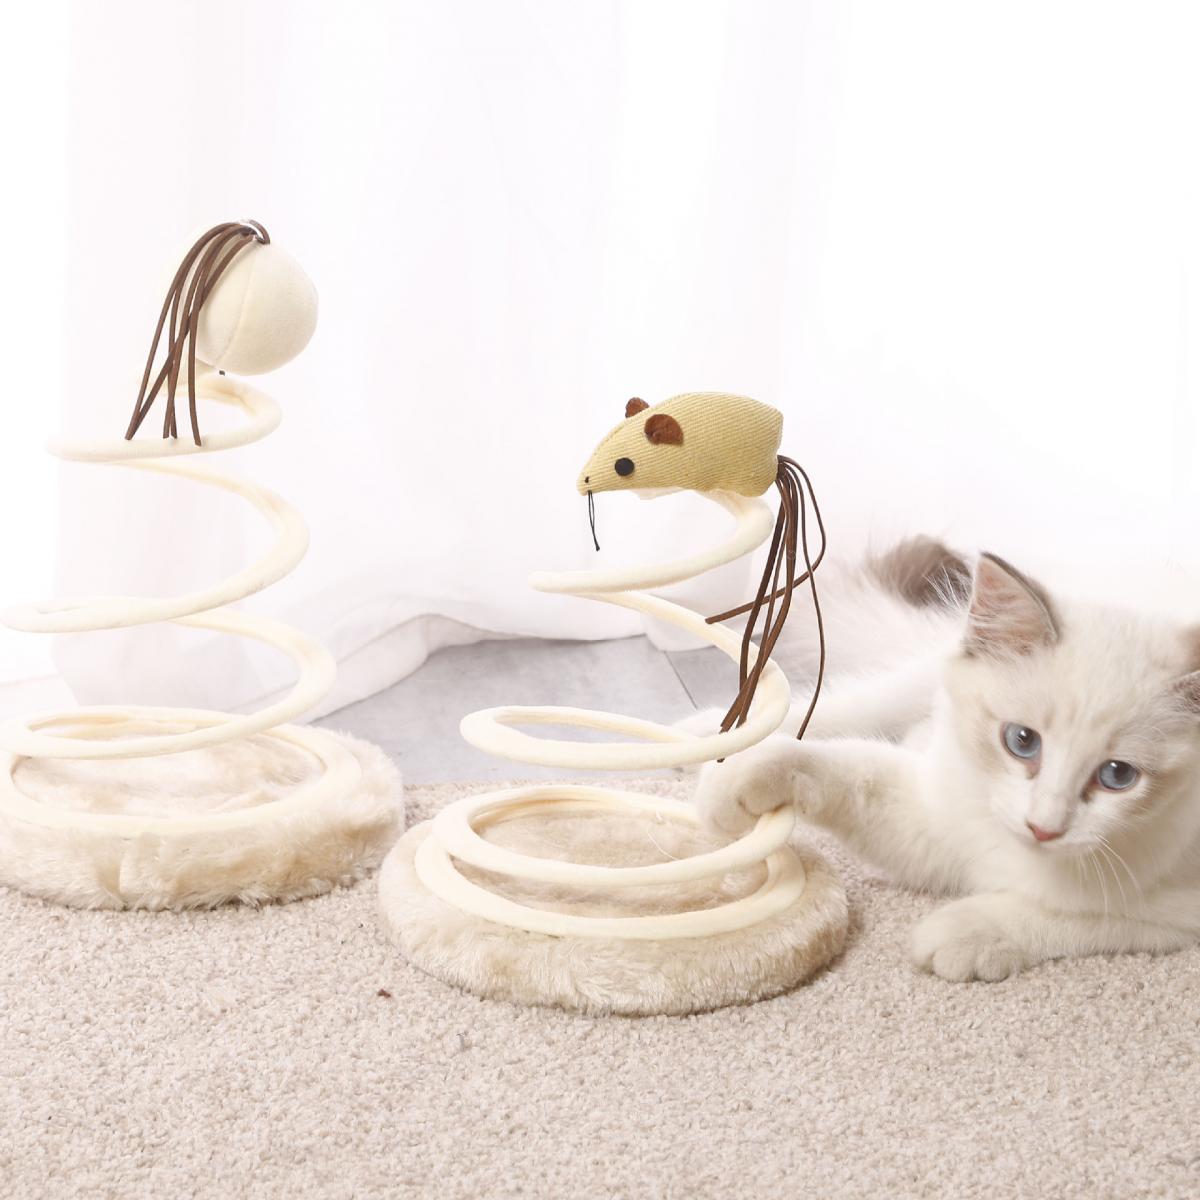 貓玩具毛絨老鼠彈簧螺旋鋼絲逗貓棒麻布逗貓用品貓咪寵物玩具 麻布老鼠